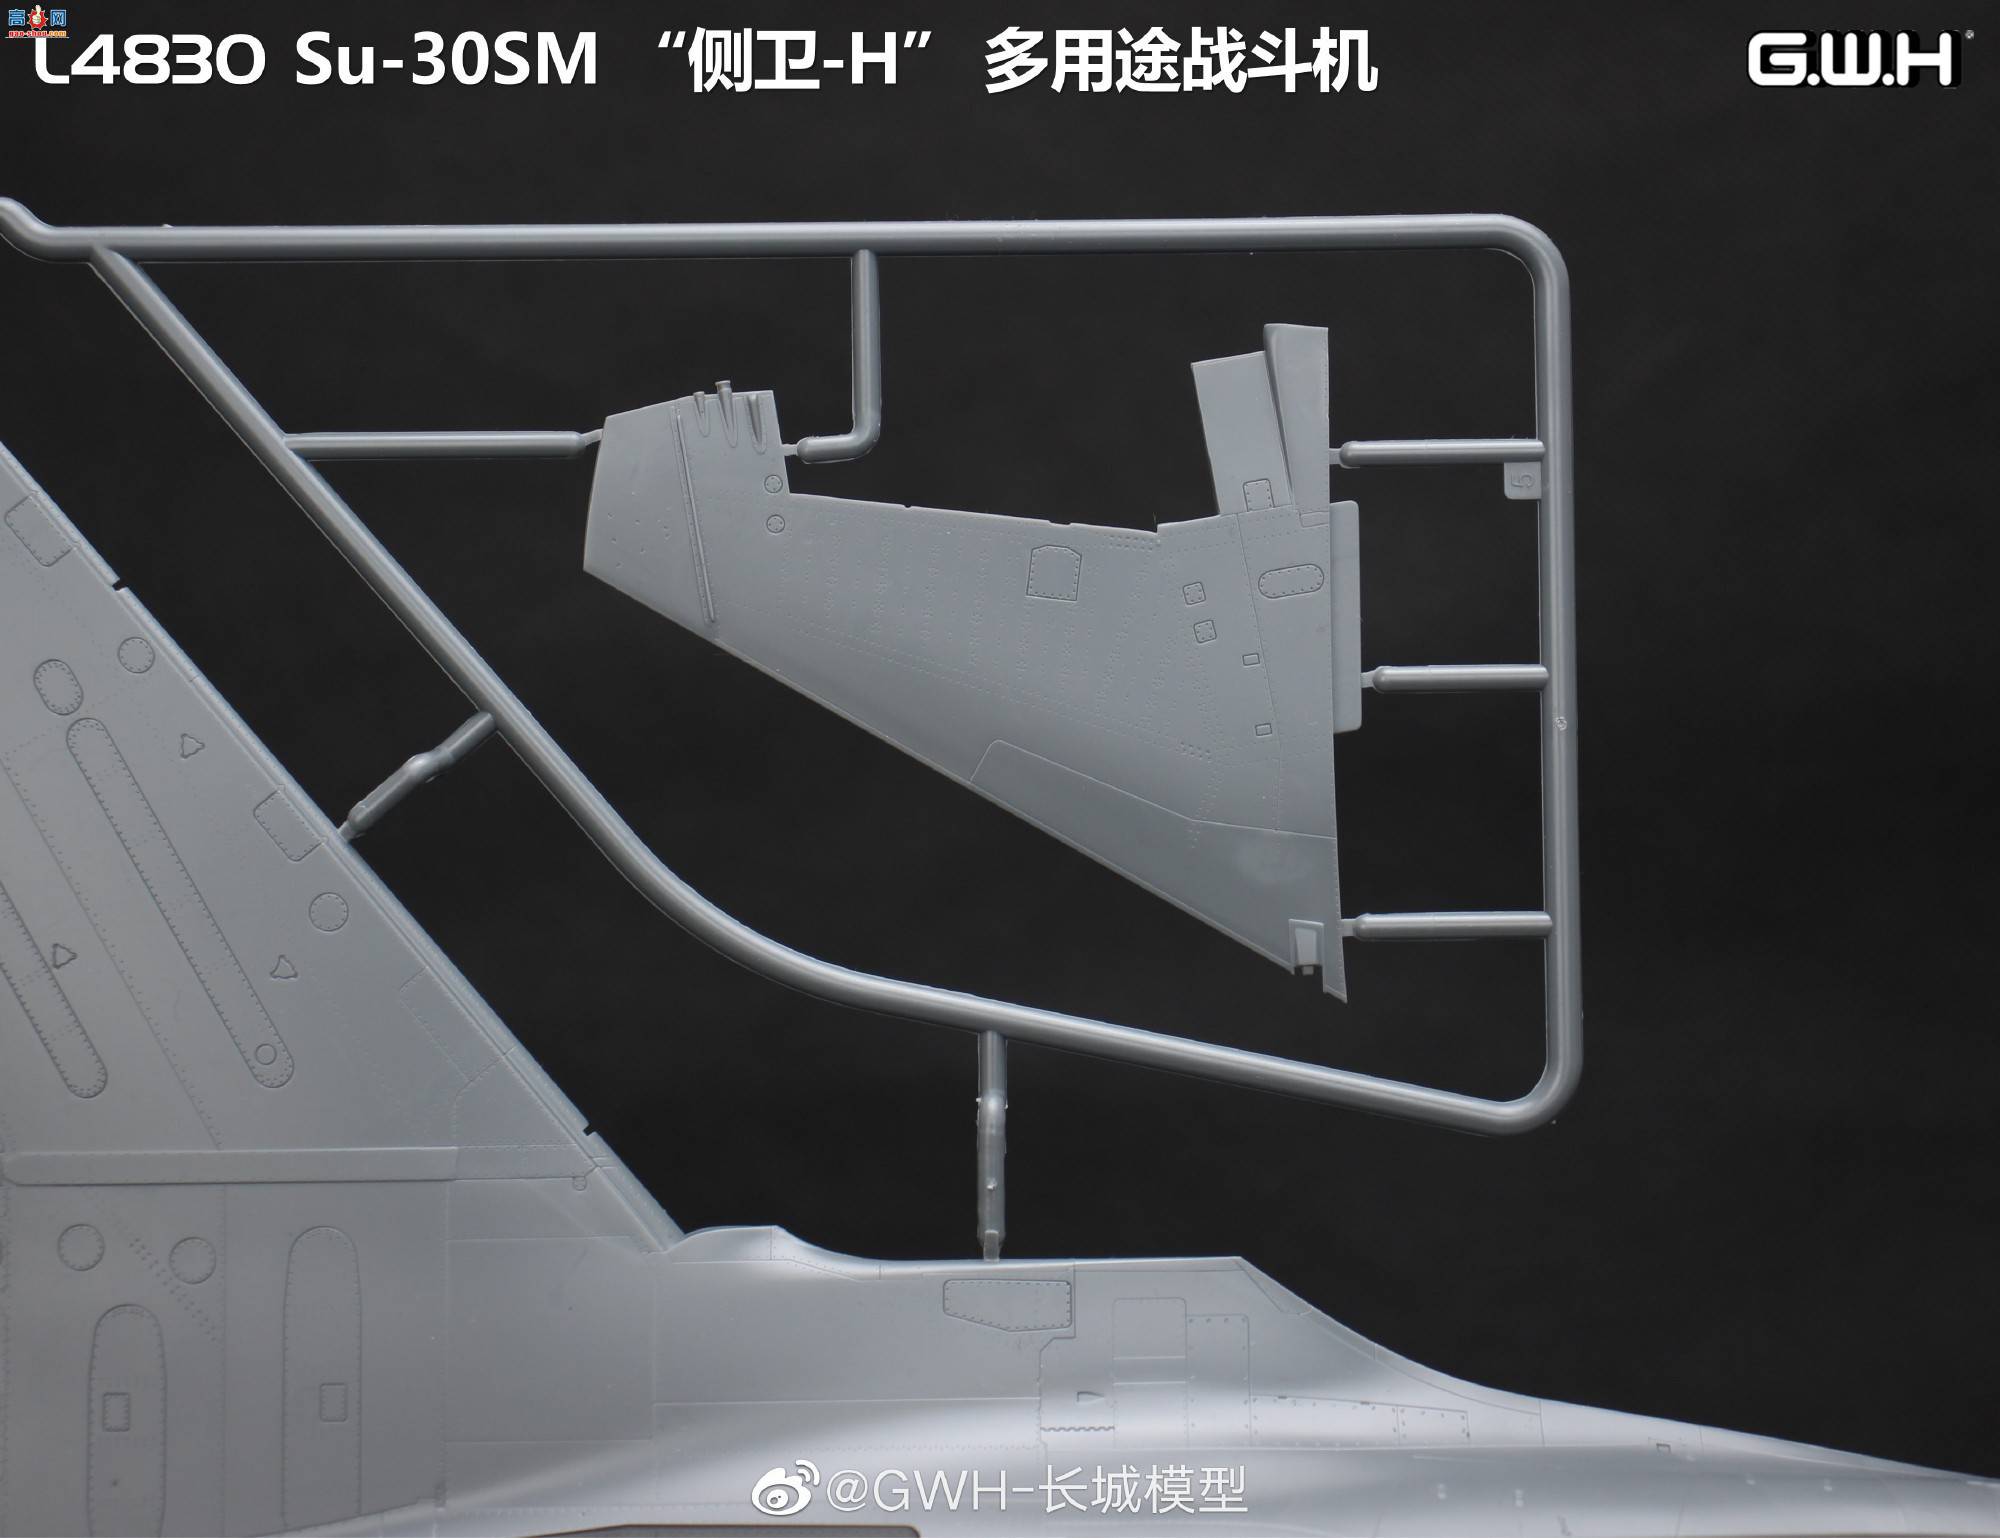 【长城新品】L4830 Su-30SM “侧卫-H” 多用途战斗机板件图